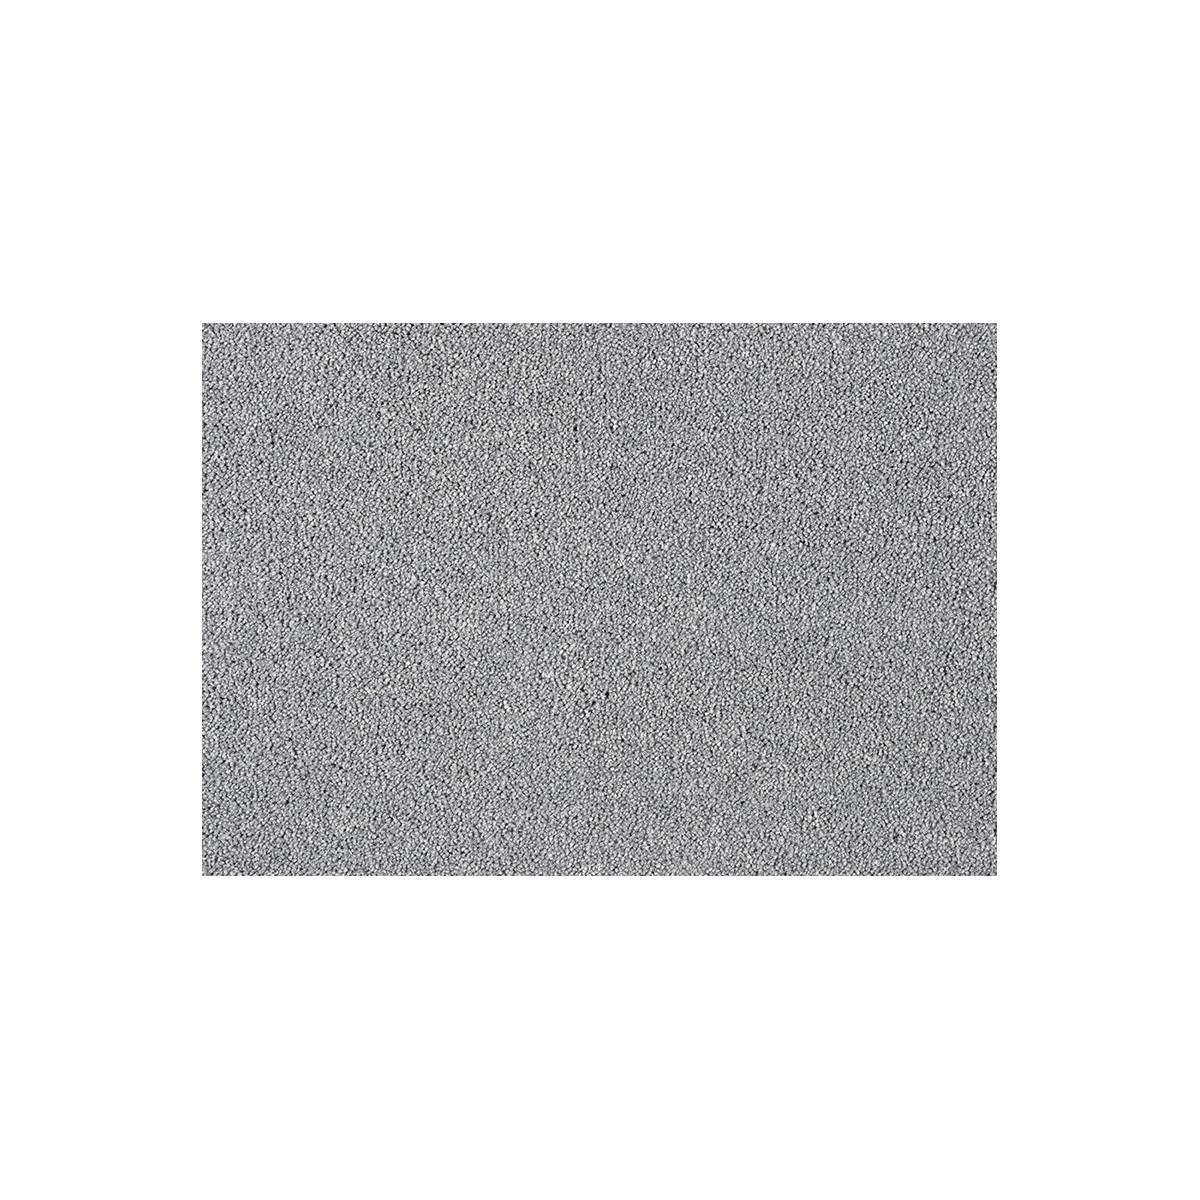 Metrážový koberec Fascination New 750 šedý